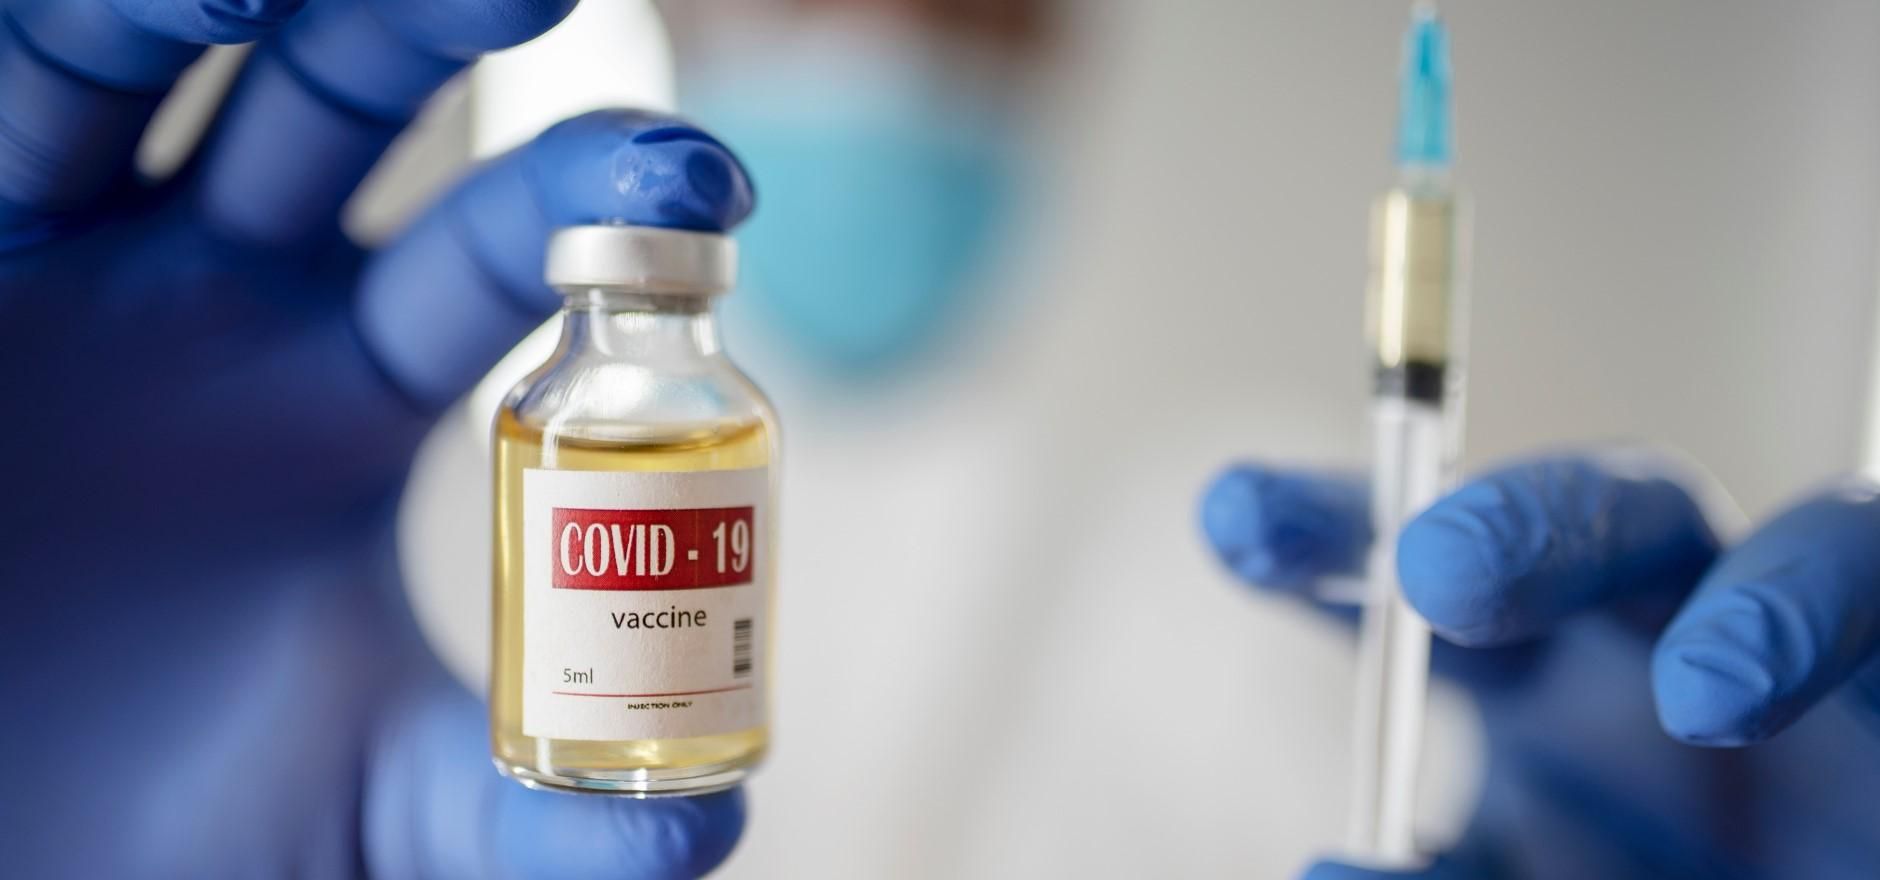 До лета: в Минздраве рассказали, когда в аптеках появится вакцина против COVID-19